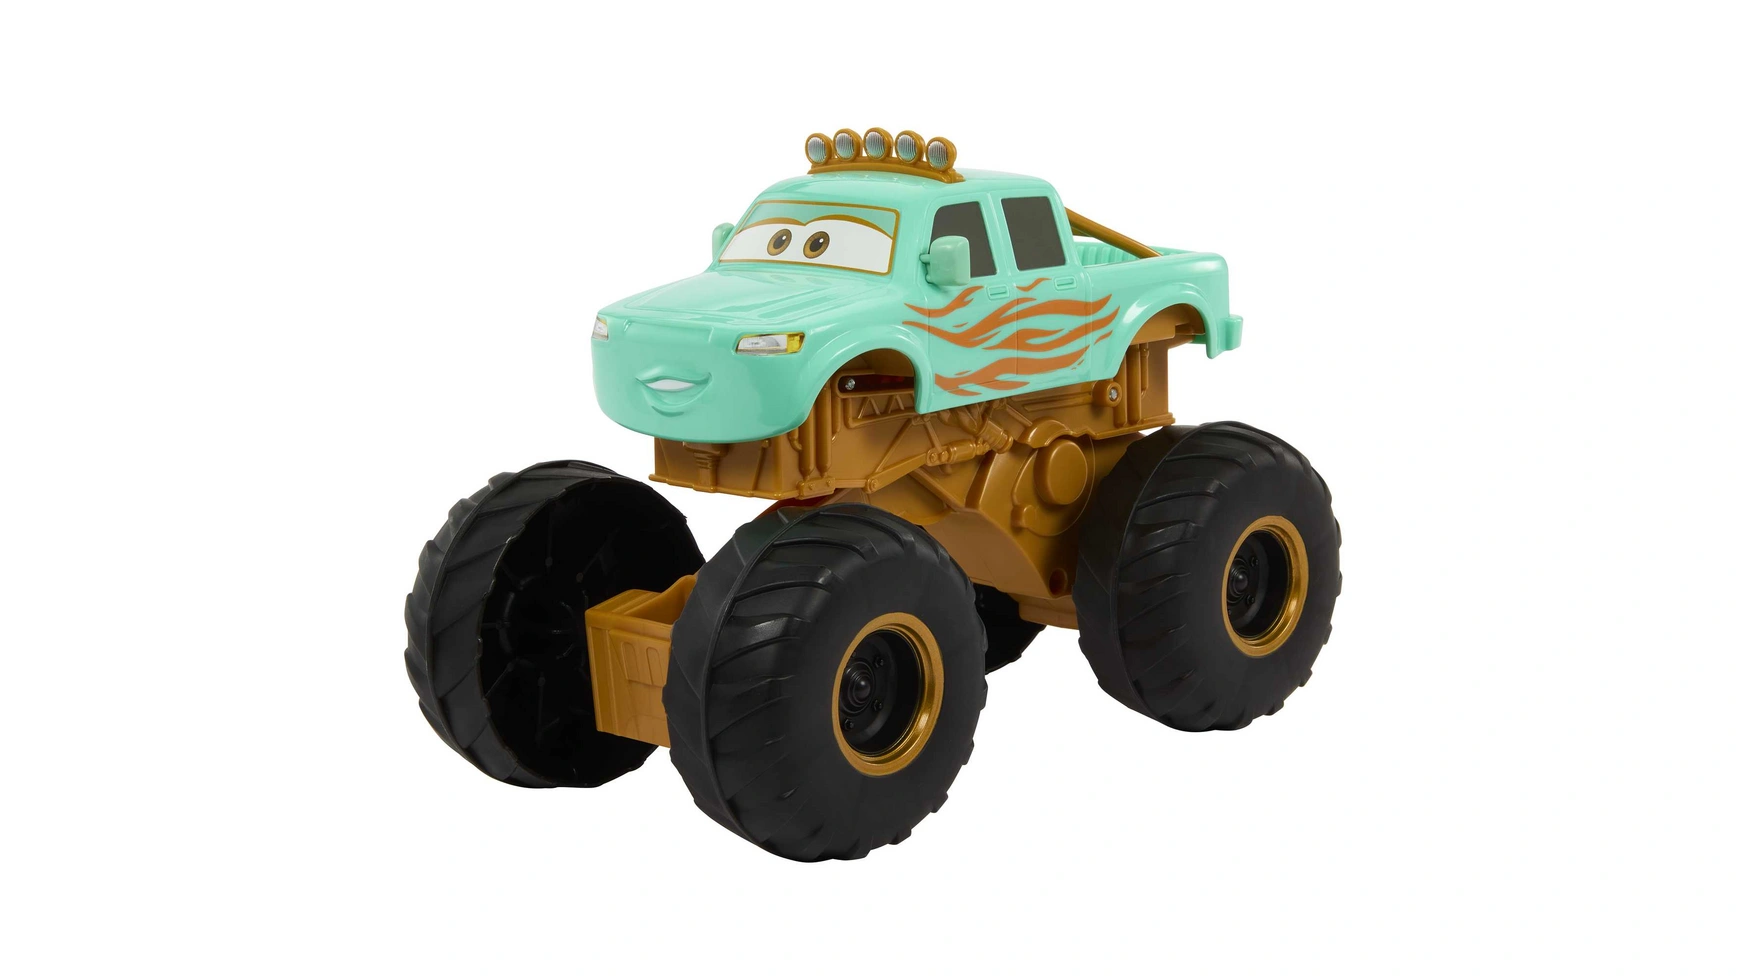 Disney Pixar Cars Hero с участием Айви Mattel Disney Cars Fahrzeuge модели автомобилей из металлического сплава disney pixar тачки 2 3